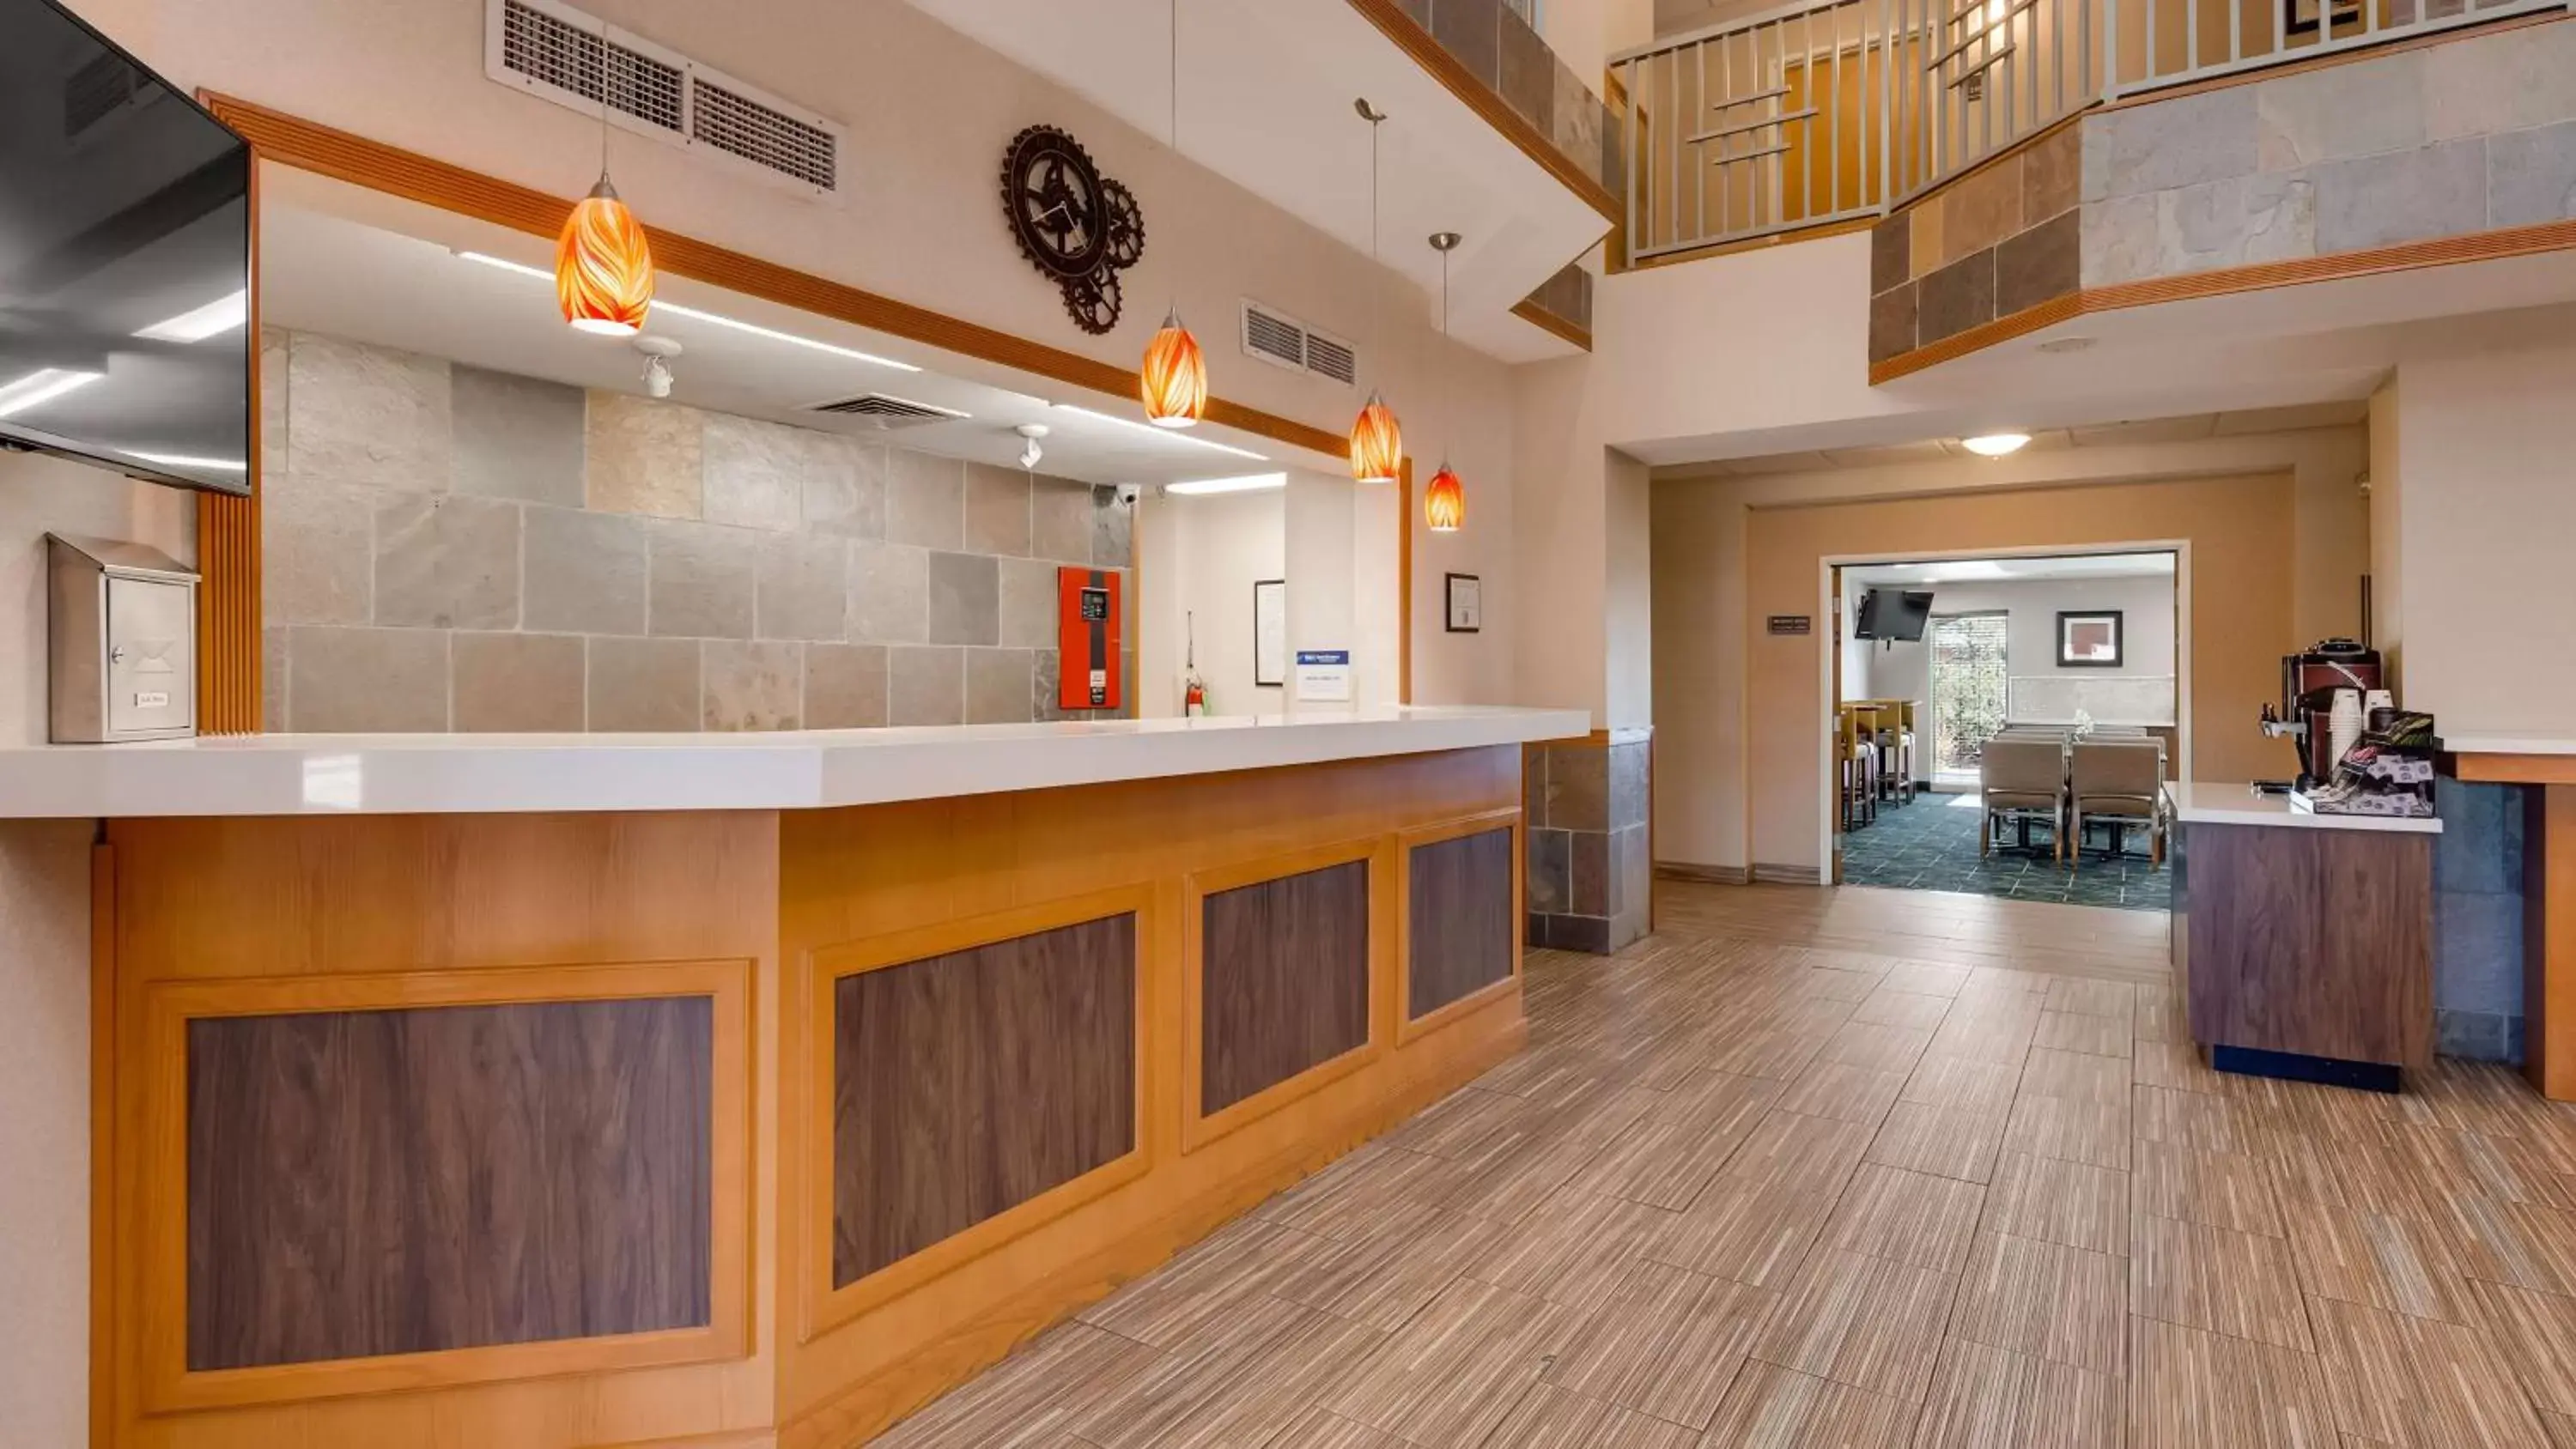 Lobby or reception, Lobby/Reception in Best Western Plus Gateway Inn & Suites - Aurora